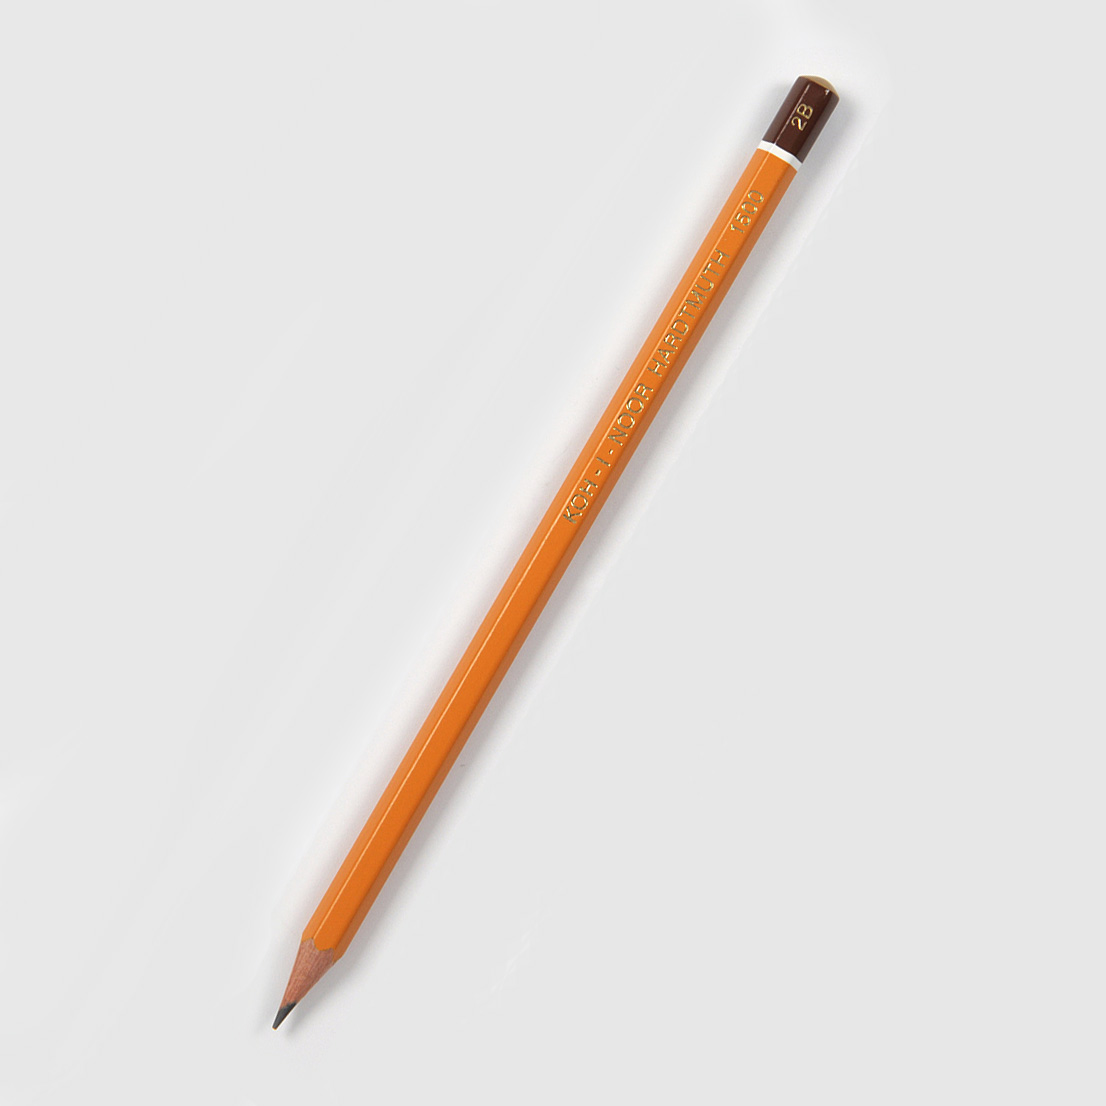 Grafitová tužka Koh-i-noor 1500, 2B, šestihranná